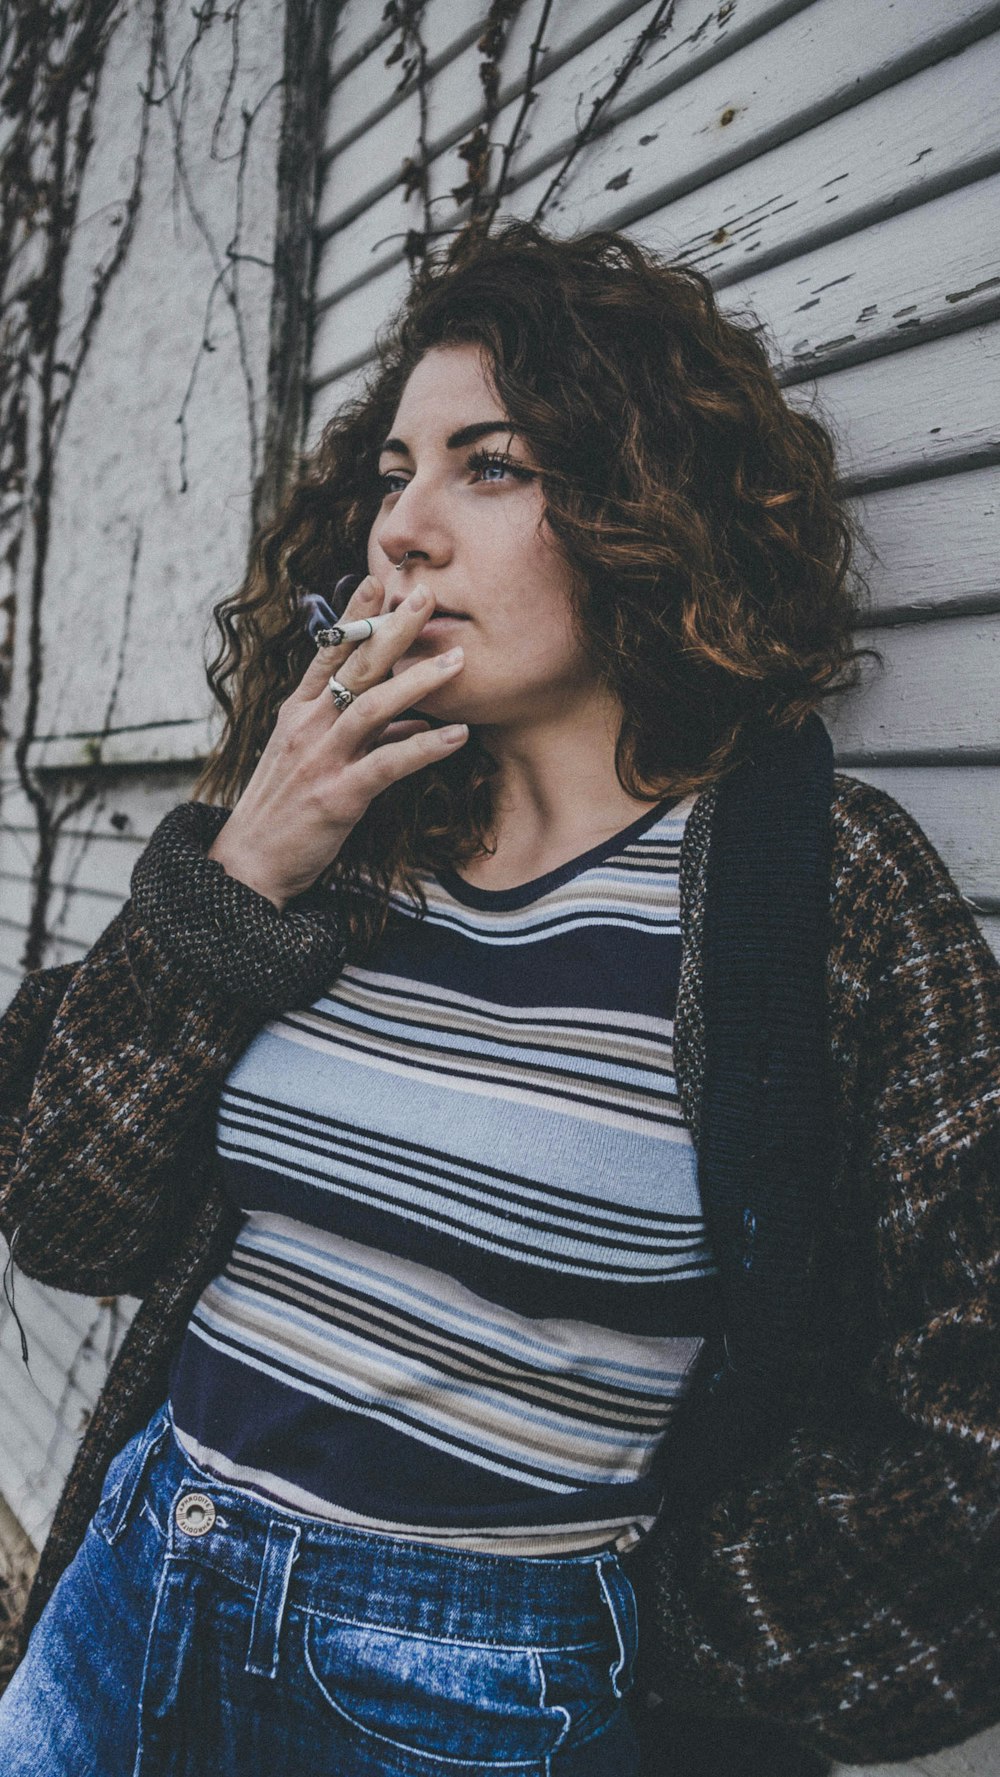 mulher na jaqueta marrom e preta usando cigarro